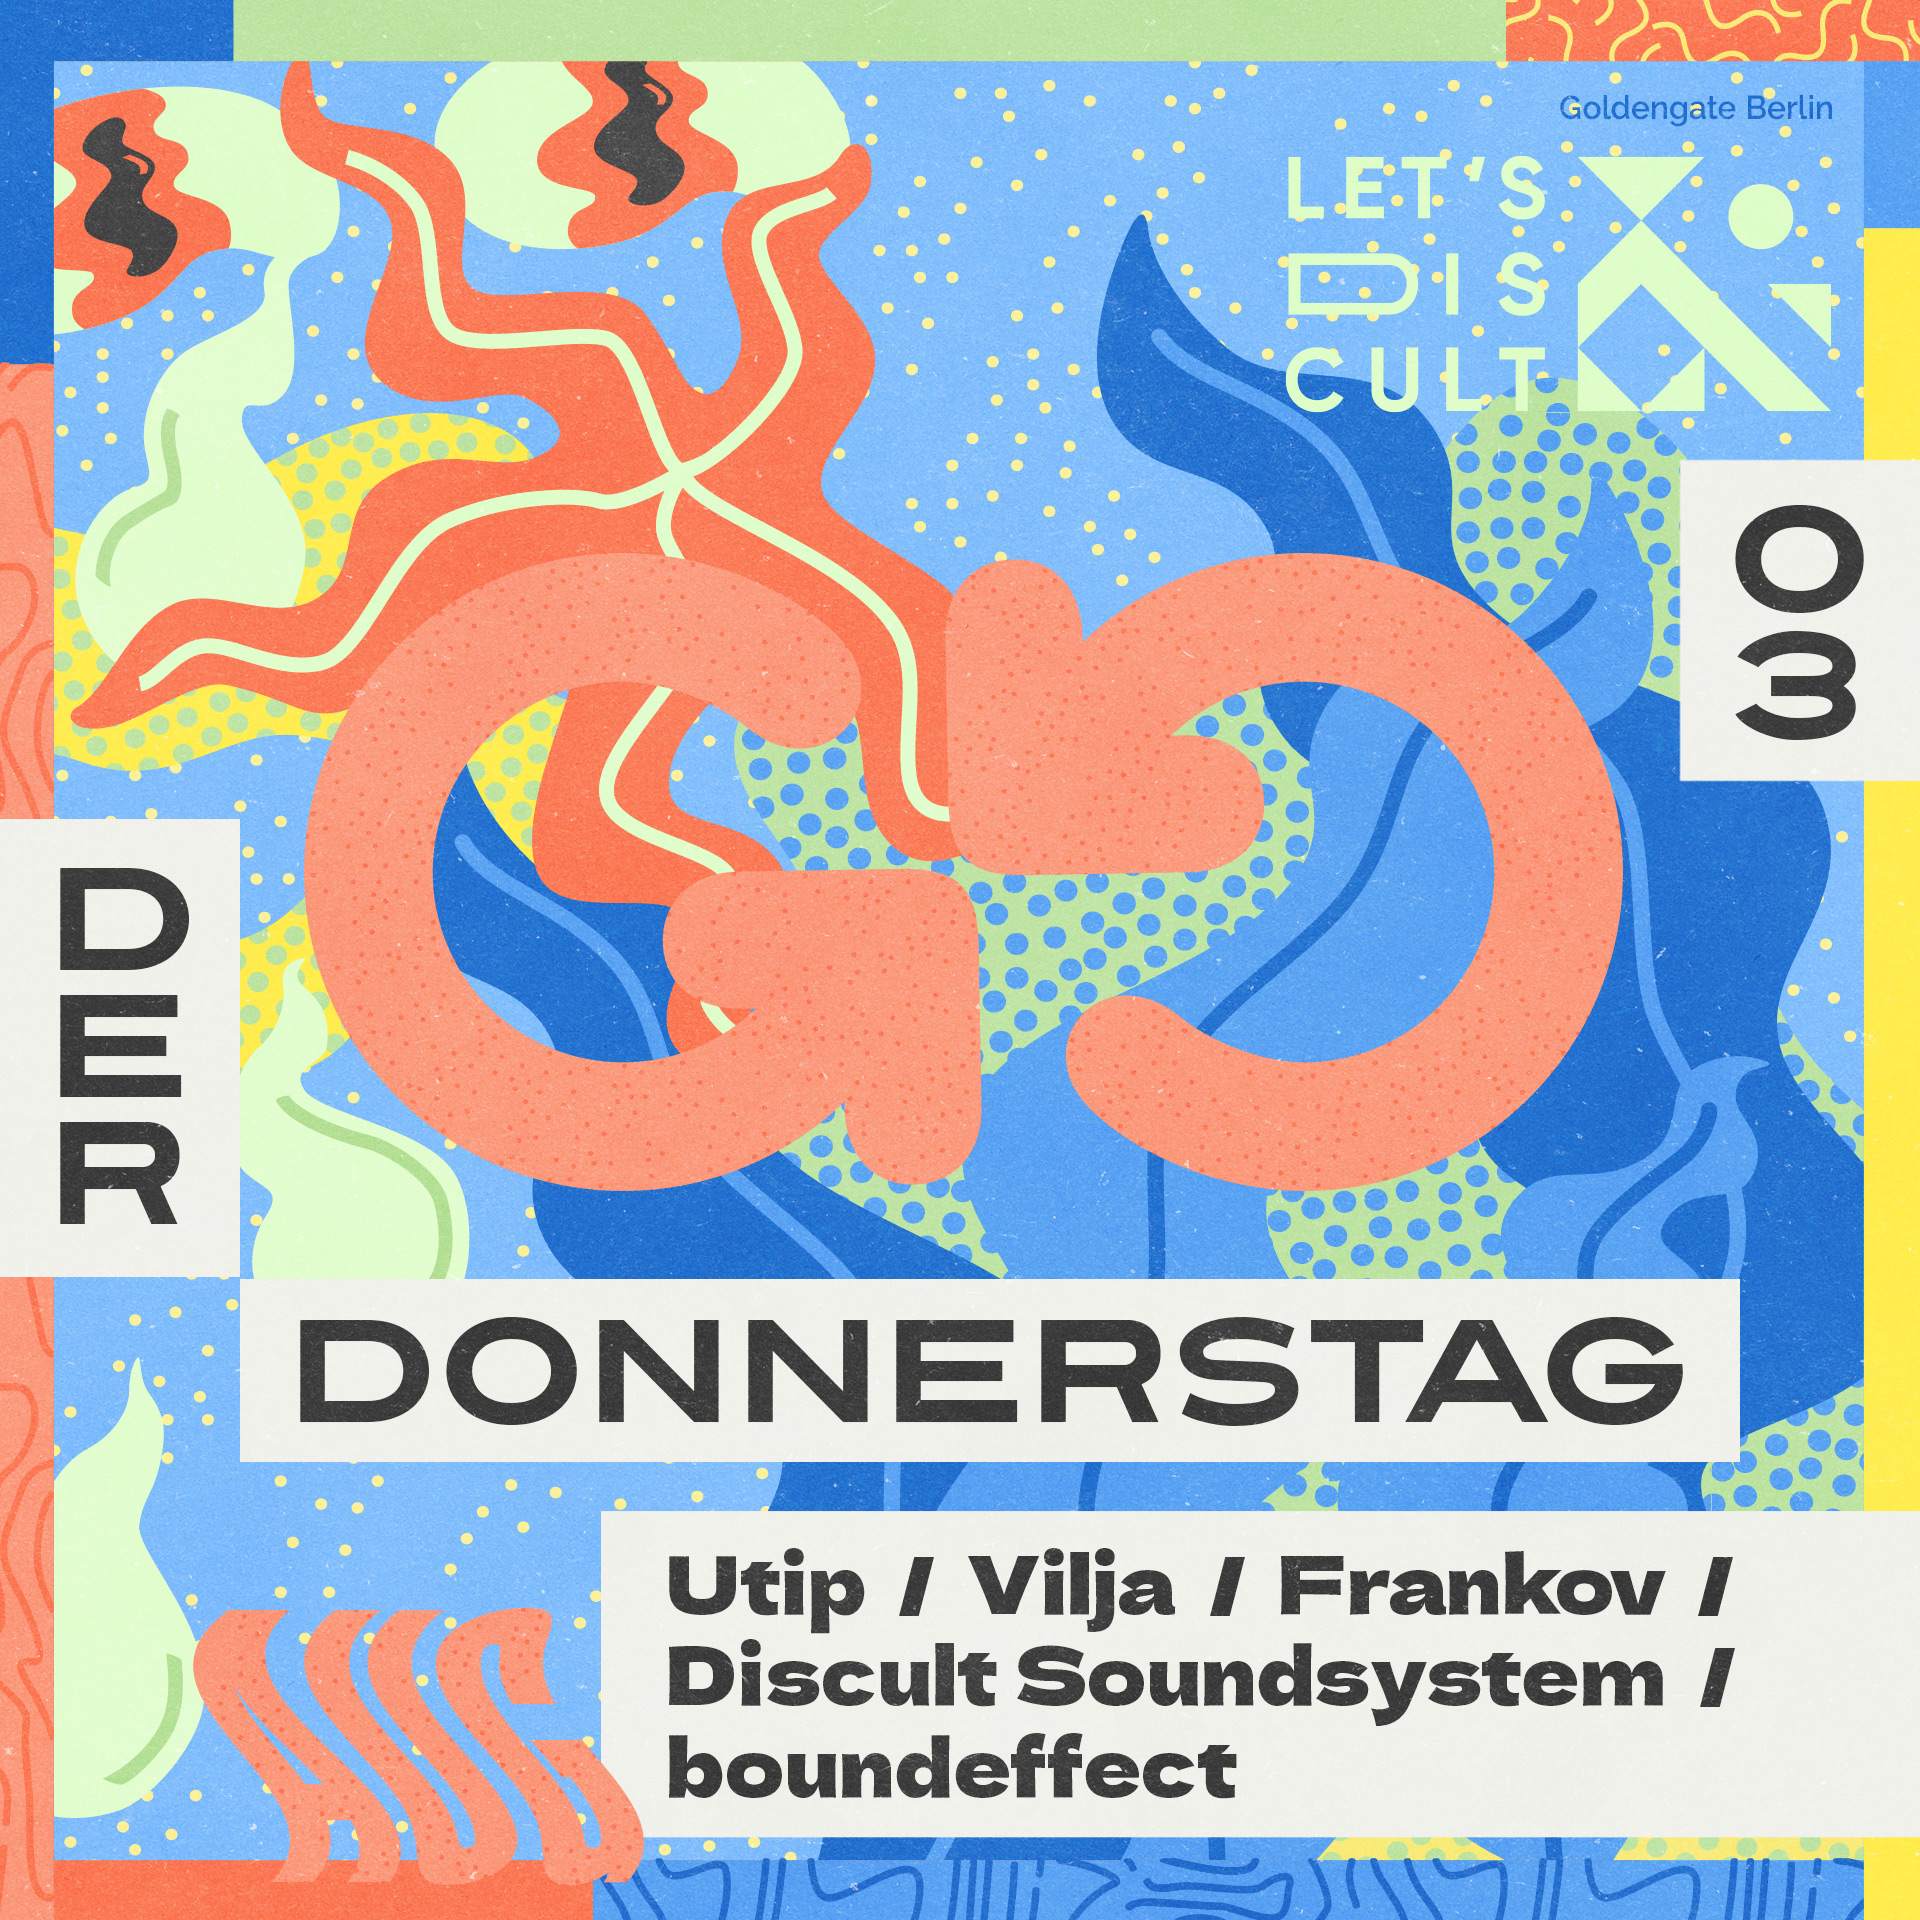 LETS DISCULT with Frankov, Vilja, Utip, boundeffect, Discult Soundsystem - Página frontal